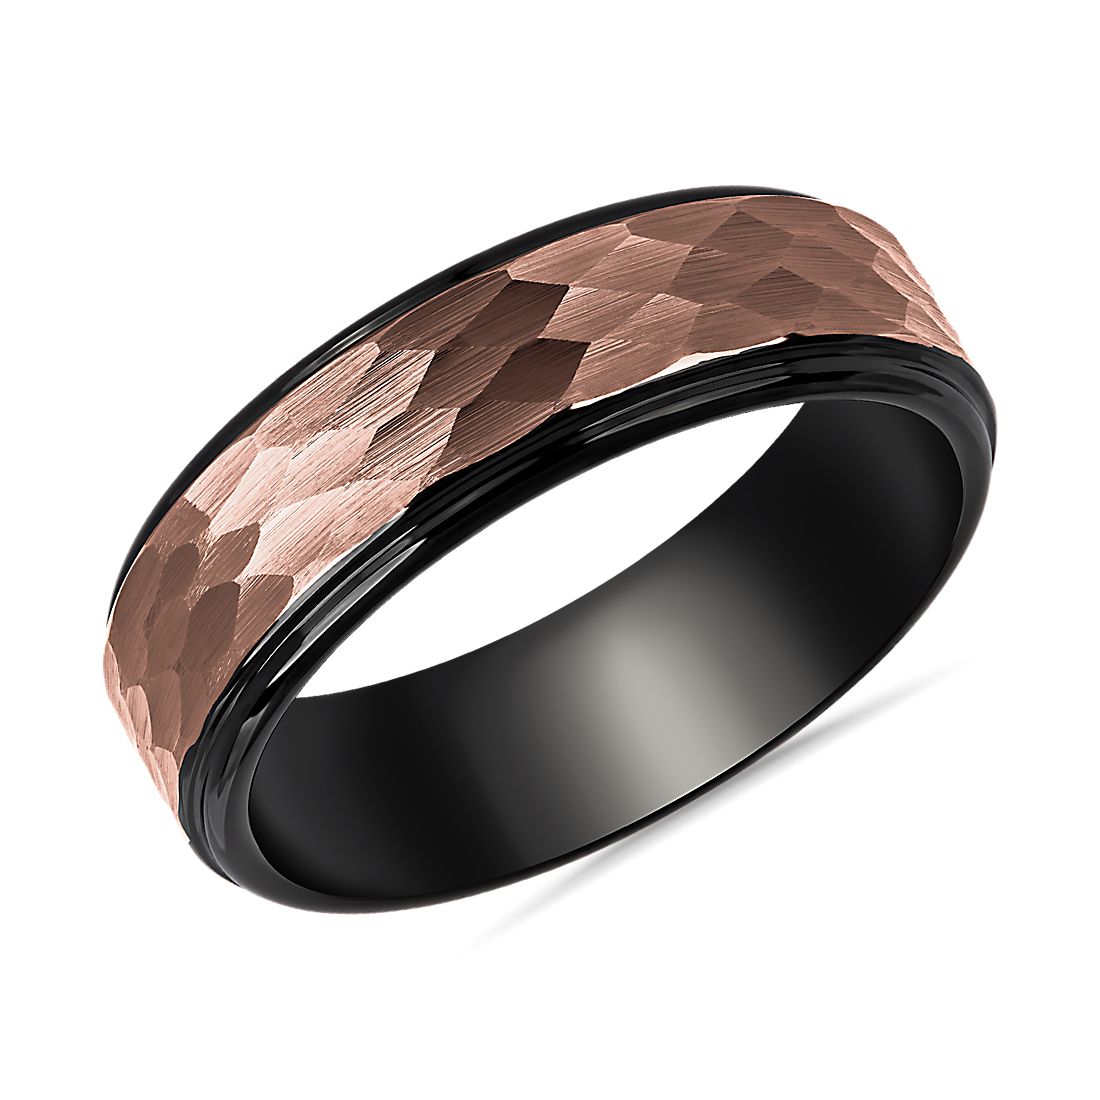 Hammered Espresso Inlay Wedding Ring in Black Tungsten Carbide (7mm)